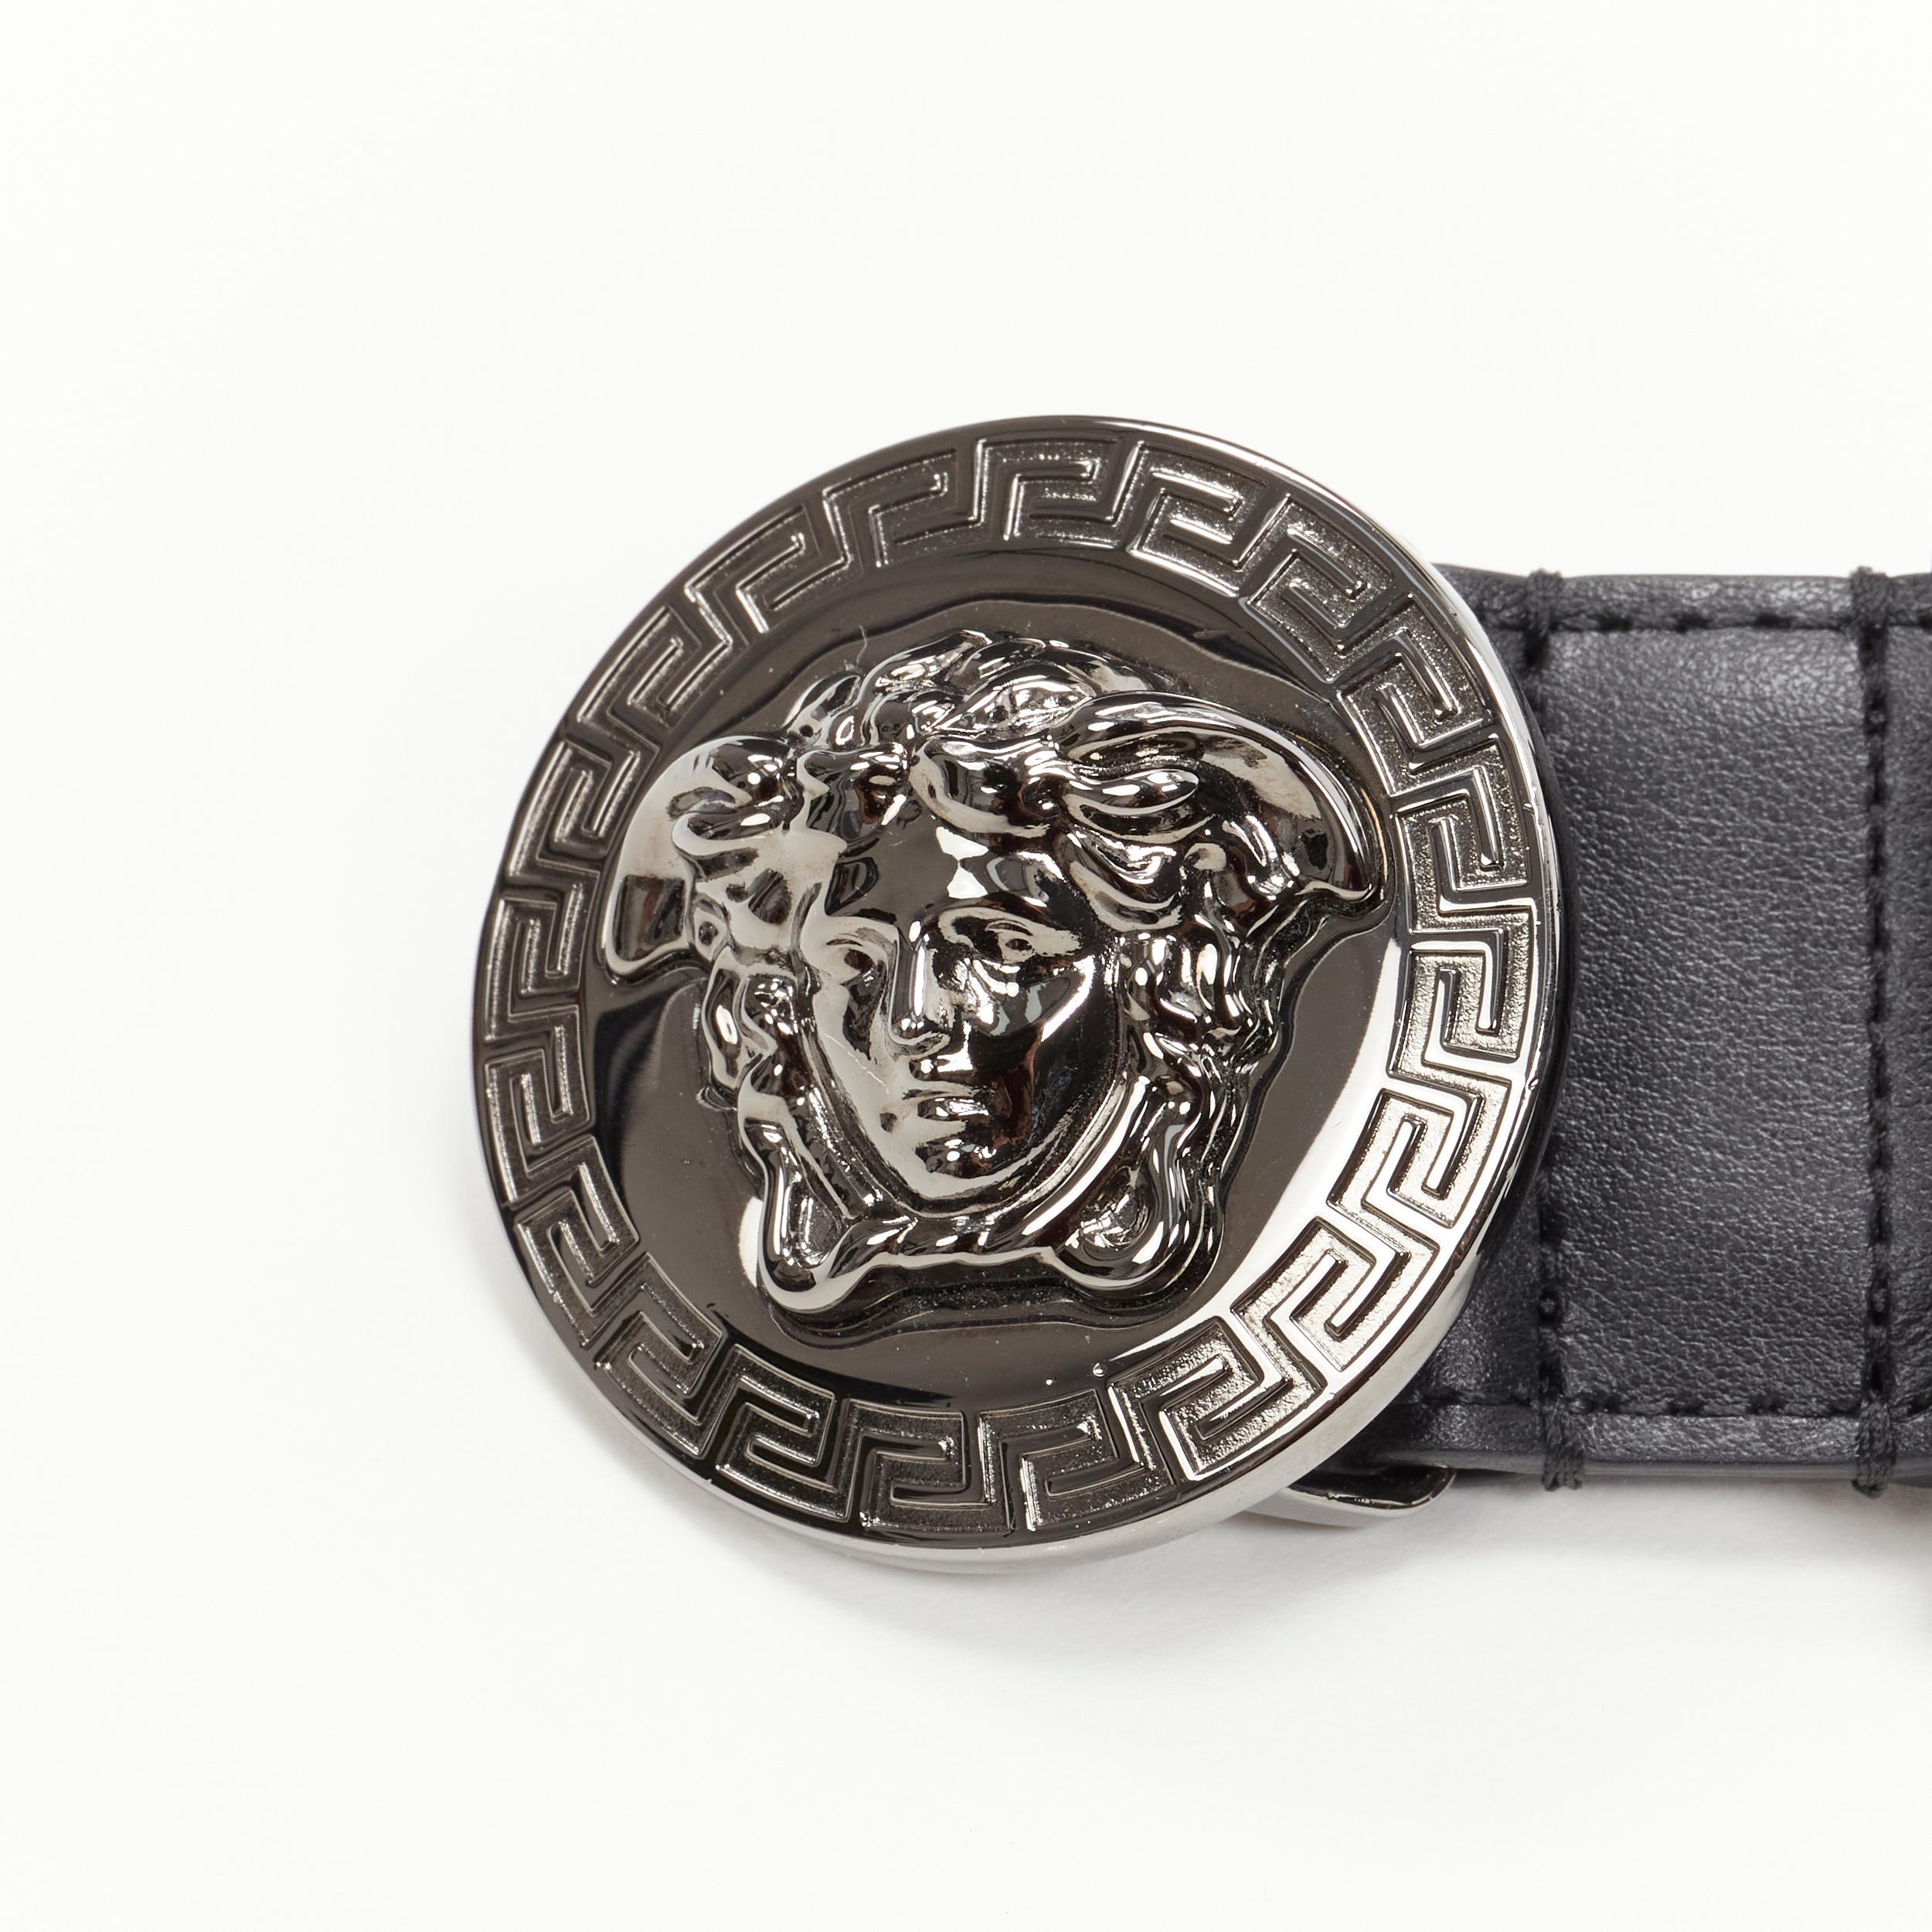 Versace, ceinture Médaillon en cuir noir 115 cm avec boucle argentée, 44-48